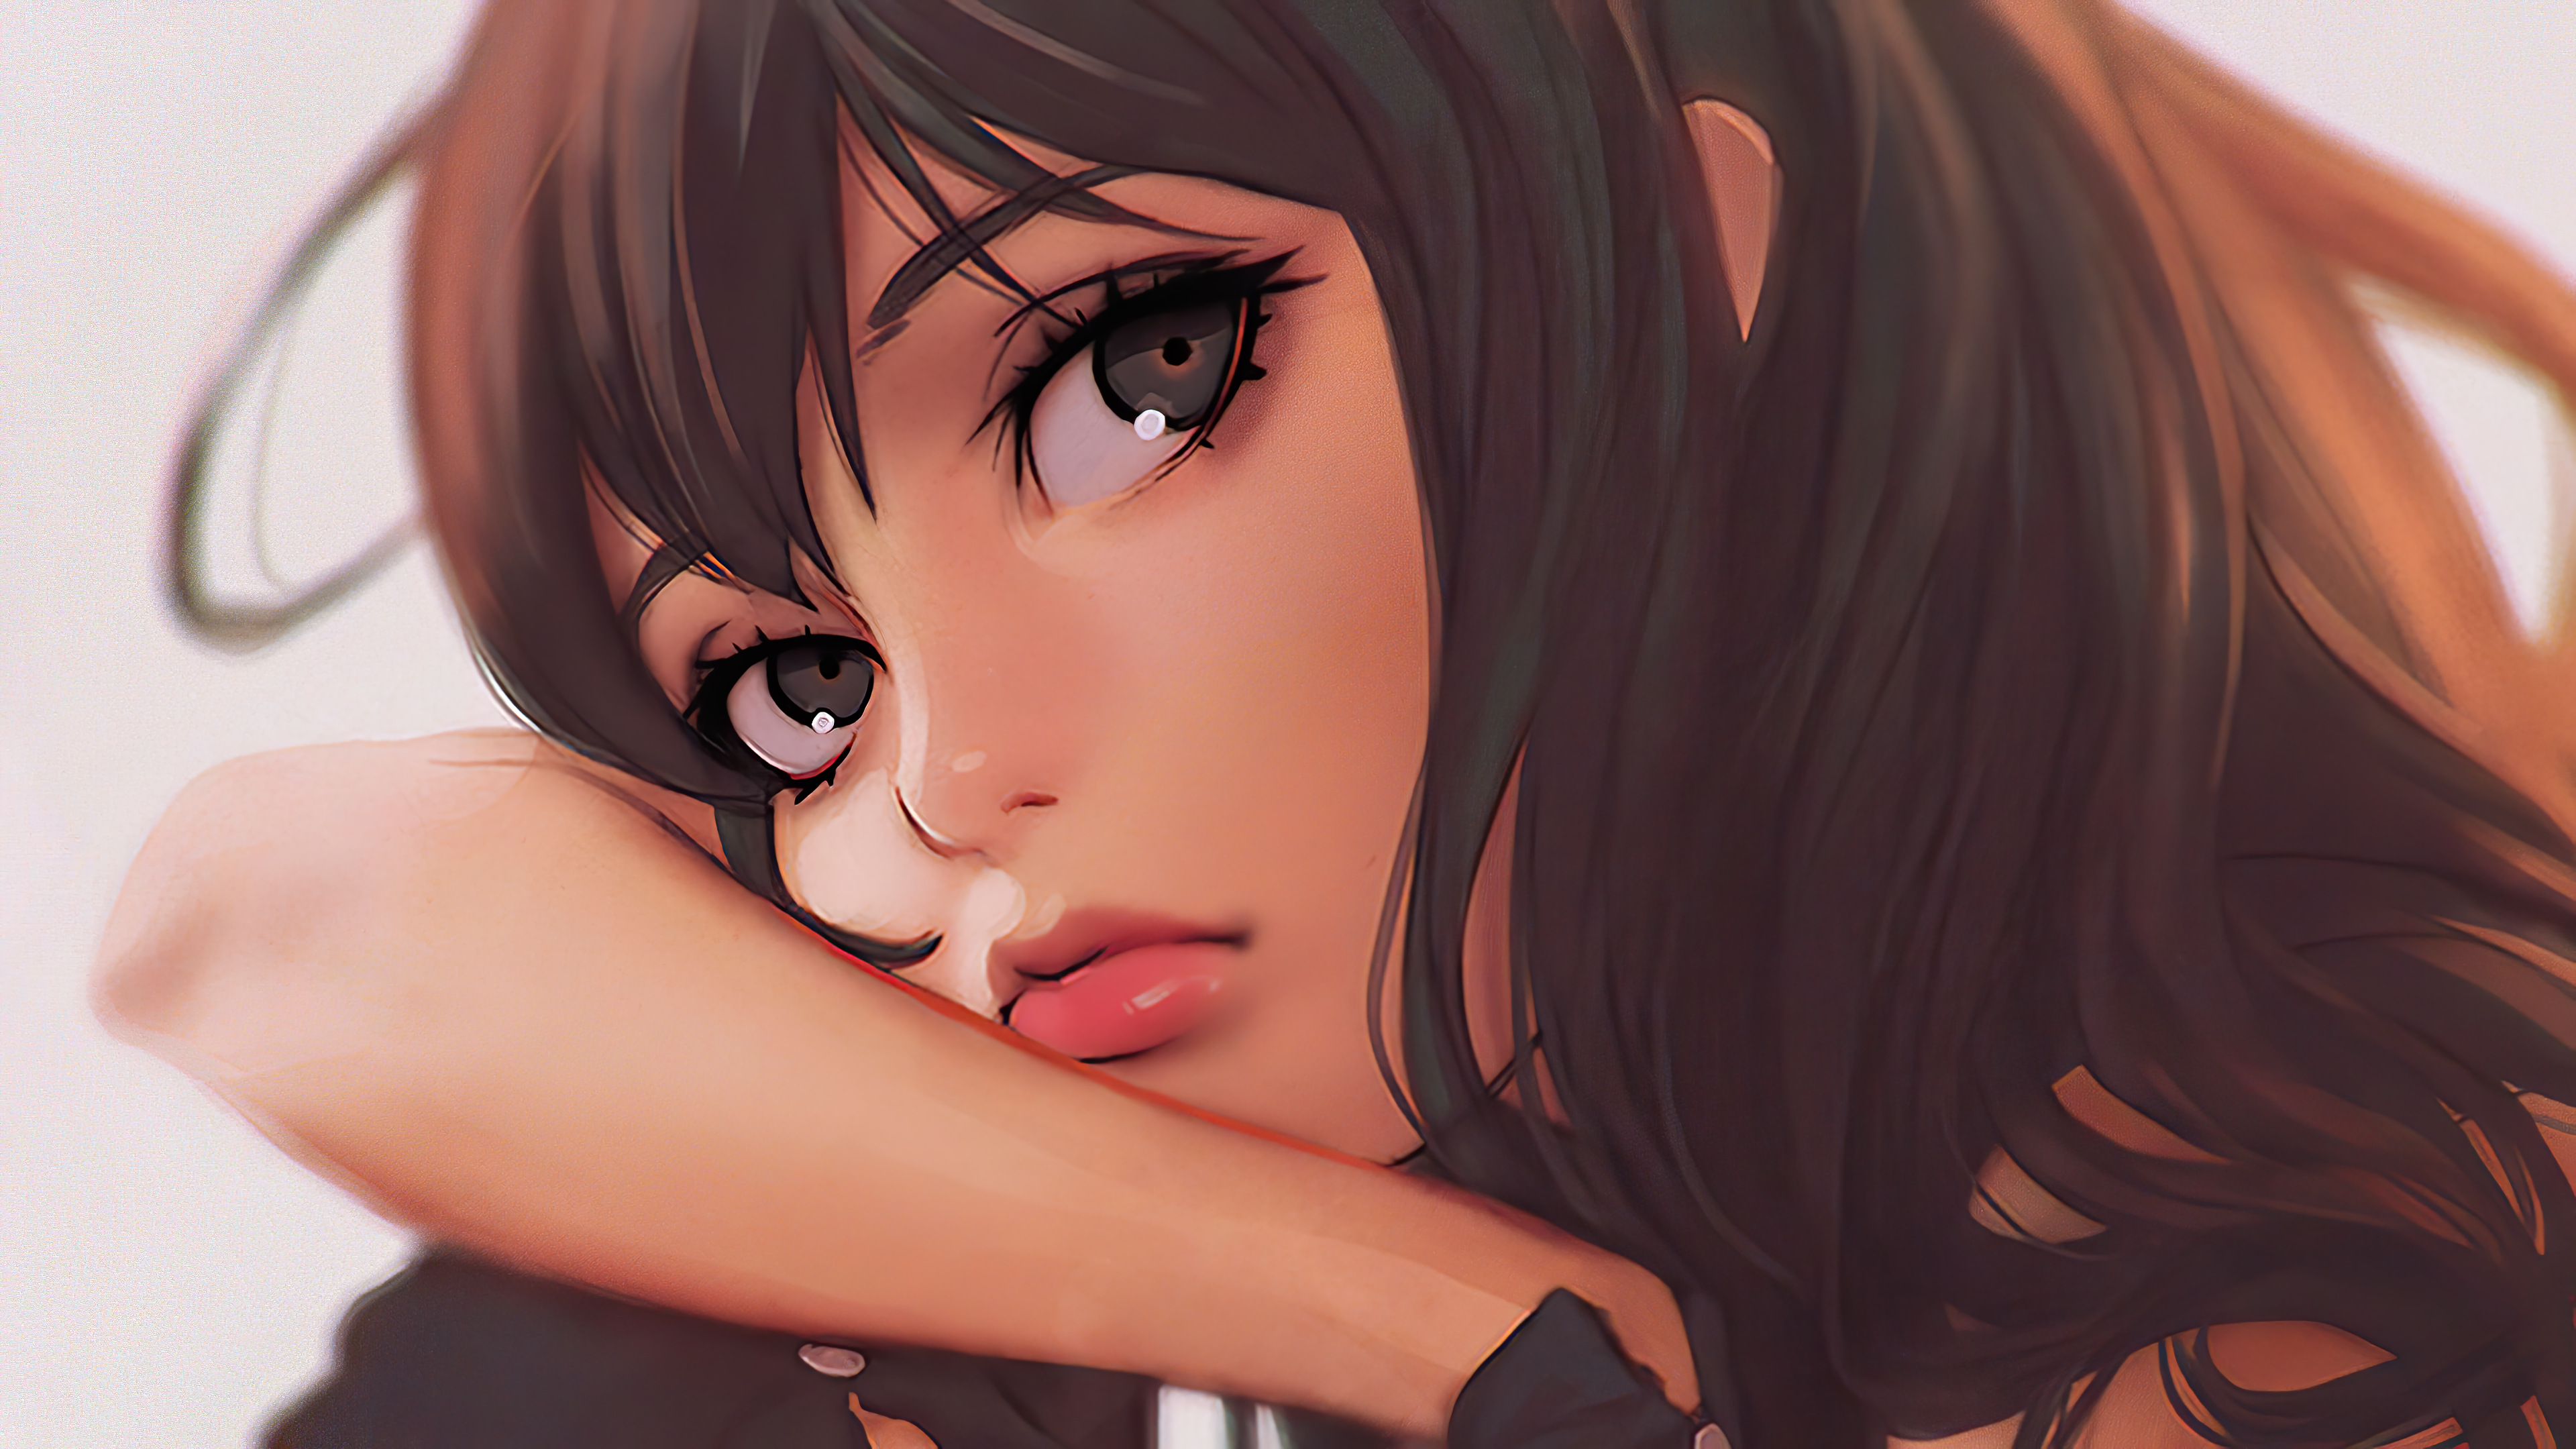 Anime Art Girl , HD Wallpaper & Backgrounds